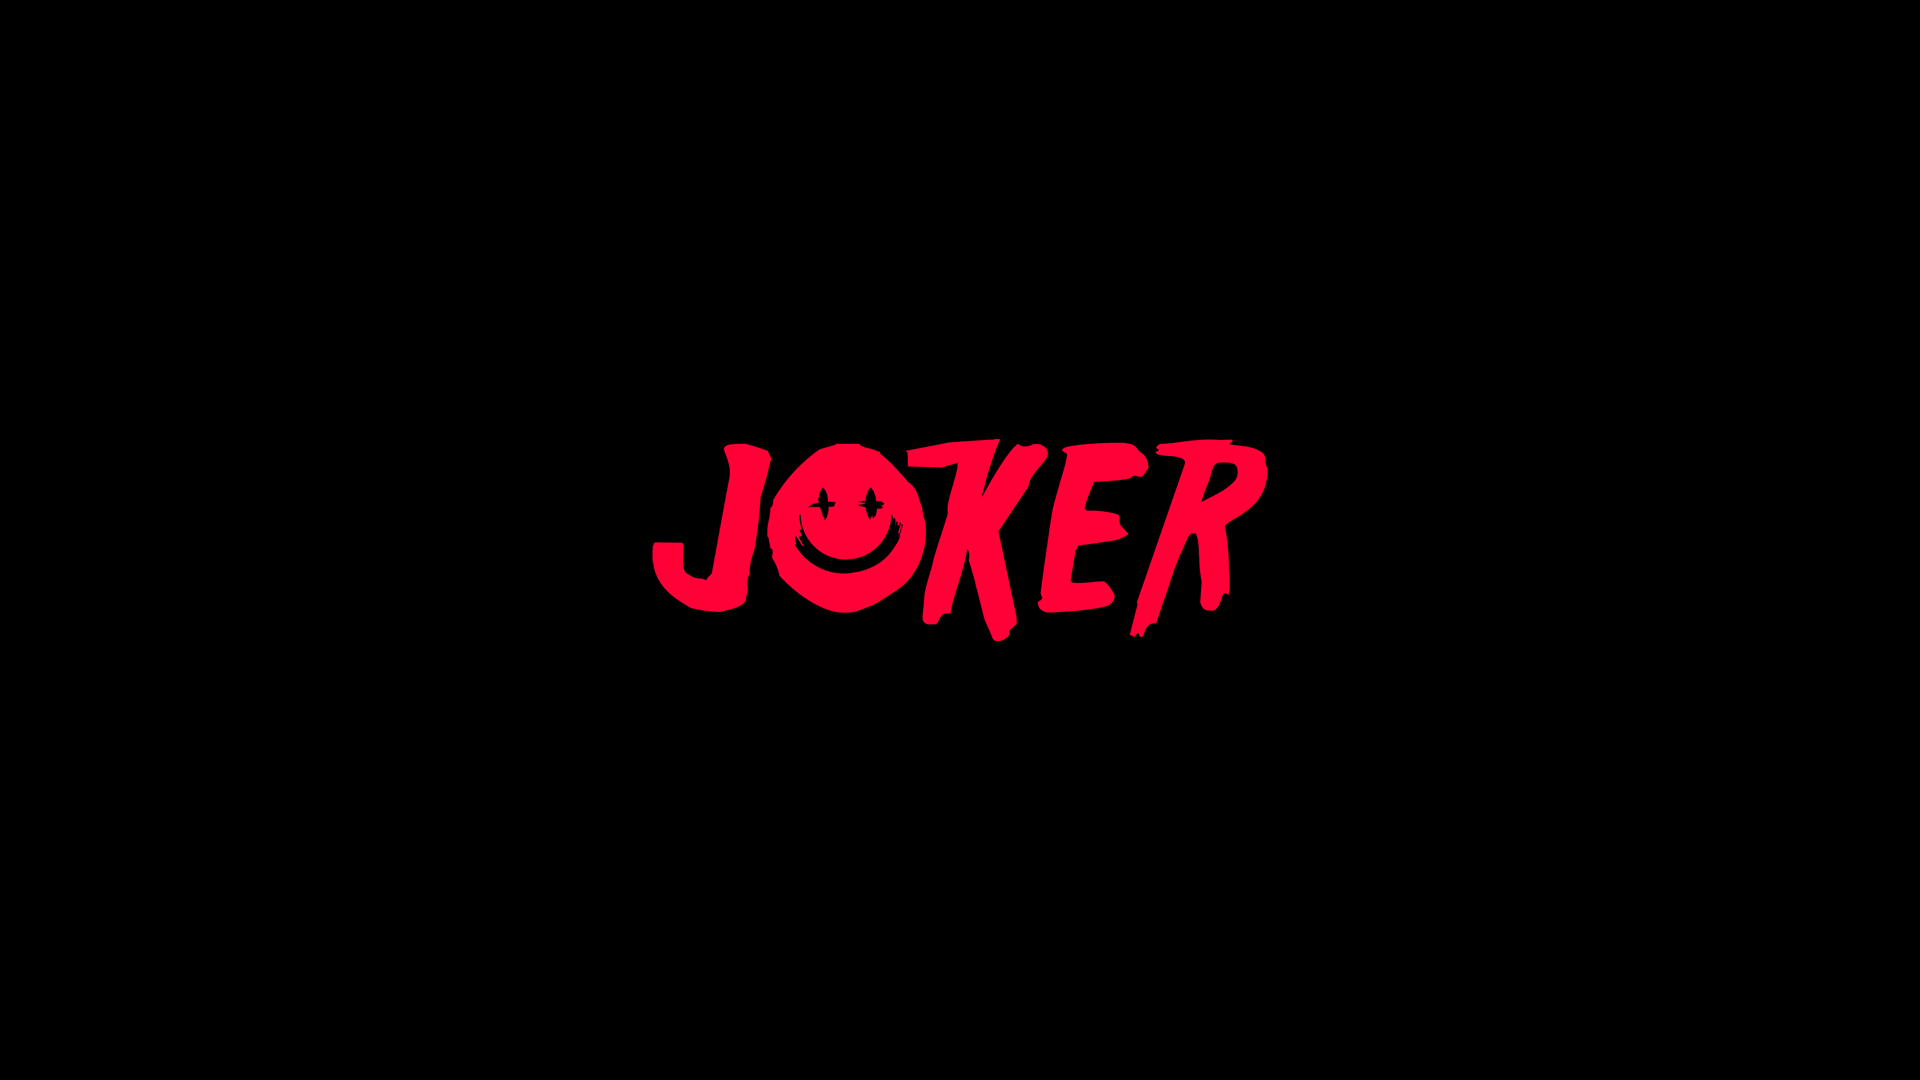 Joker-Wallpaper-2.png